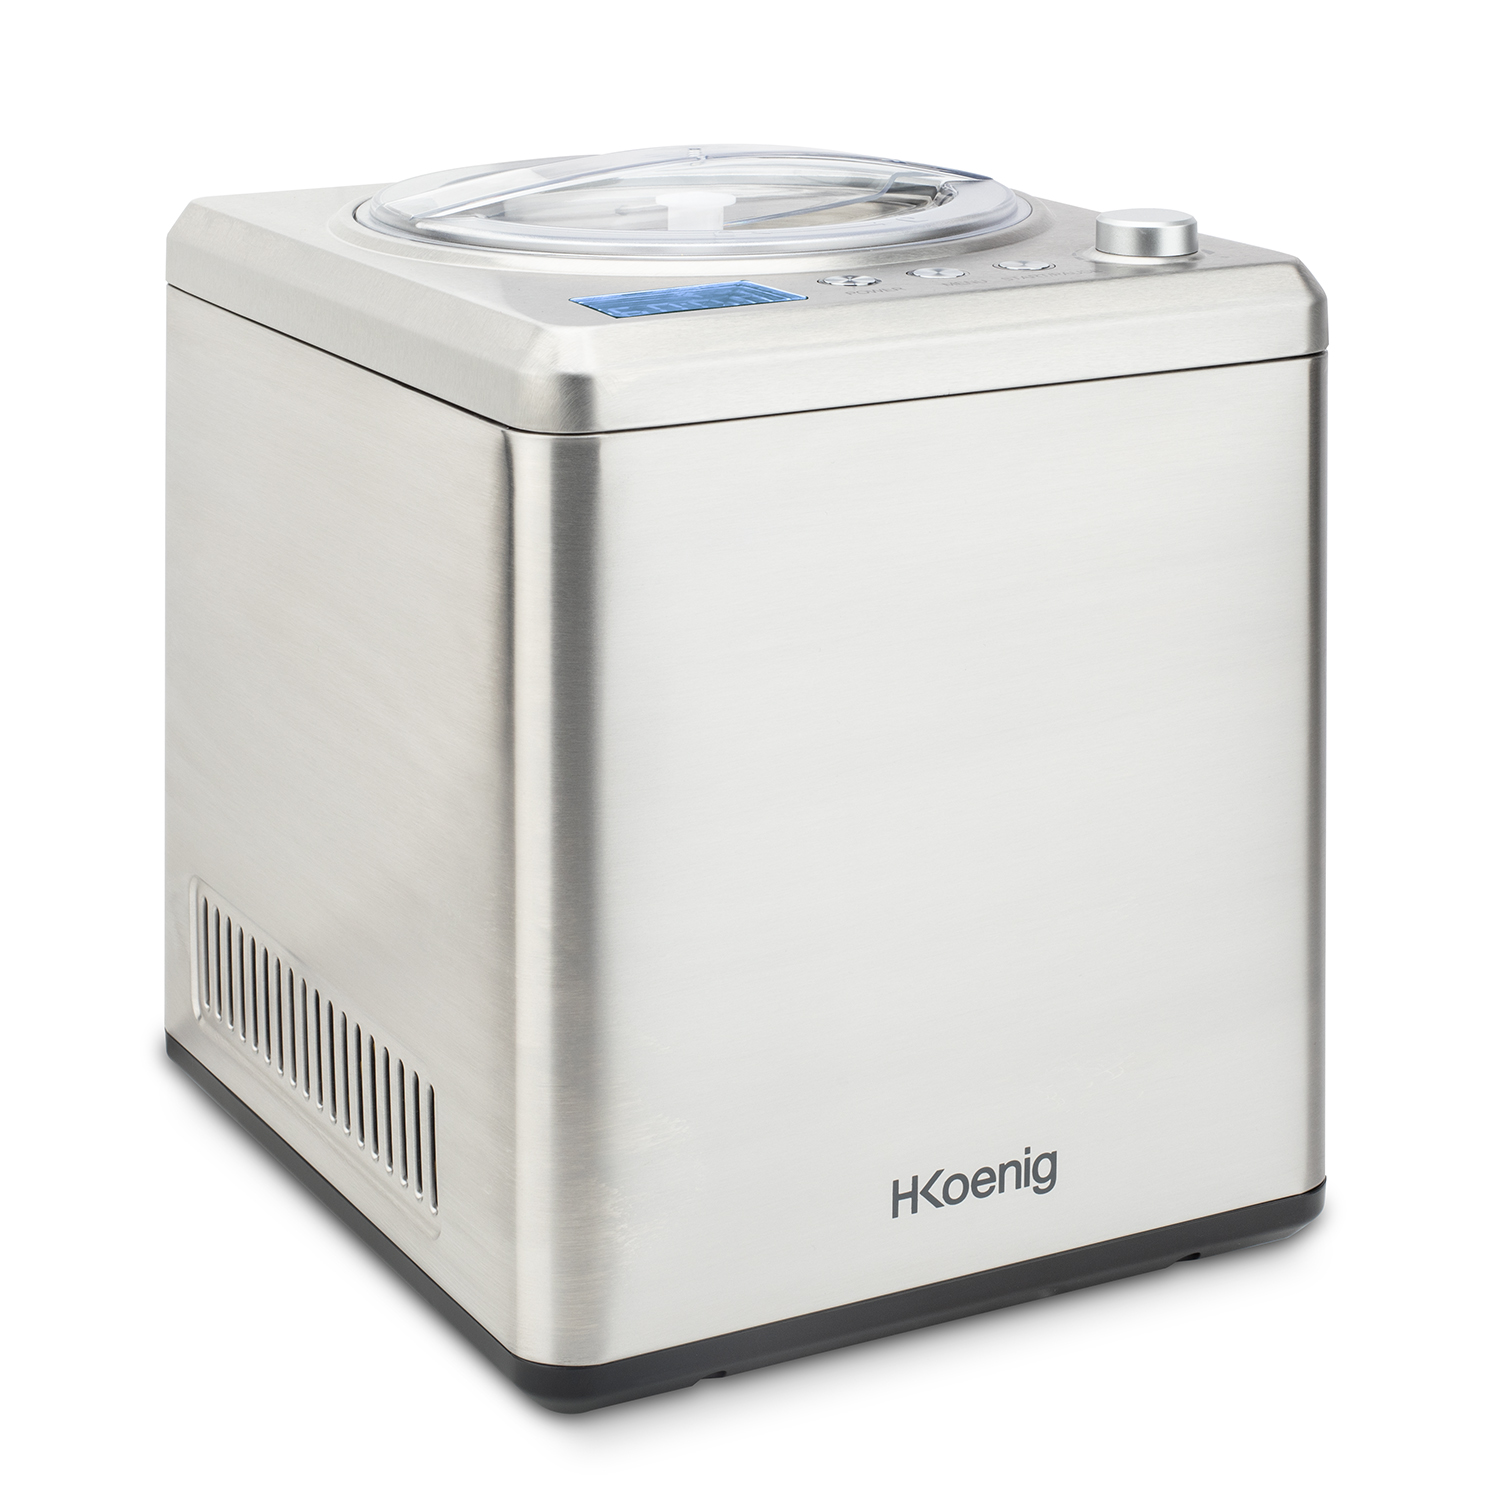 H.KOENIG H.Koenig professionelle Eismaschine HF340 (180 Sorbet 2 L / Kühlfunktion W Eiscrememaschine / 180 Joghurt, Eis, / Watt, Silber) / Frozen